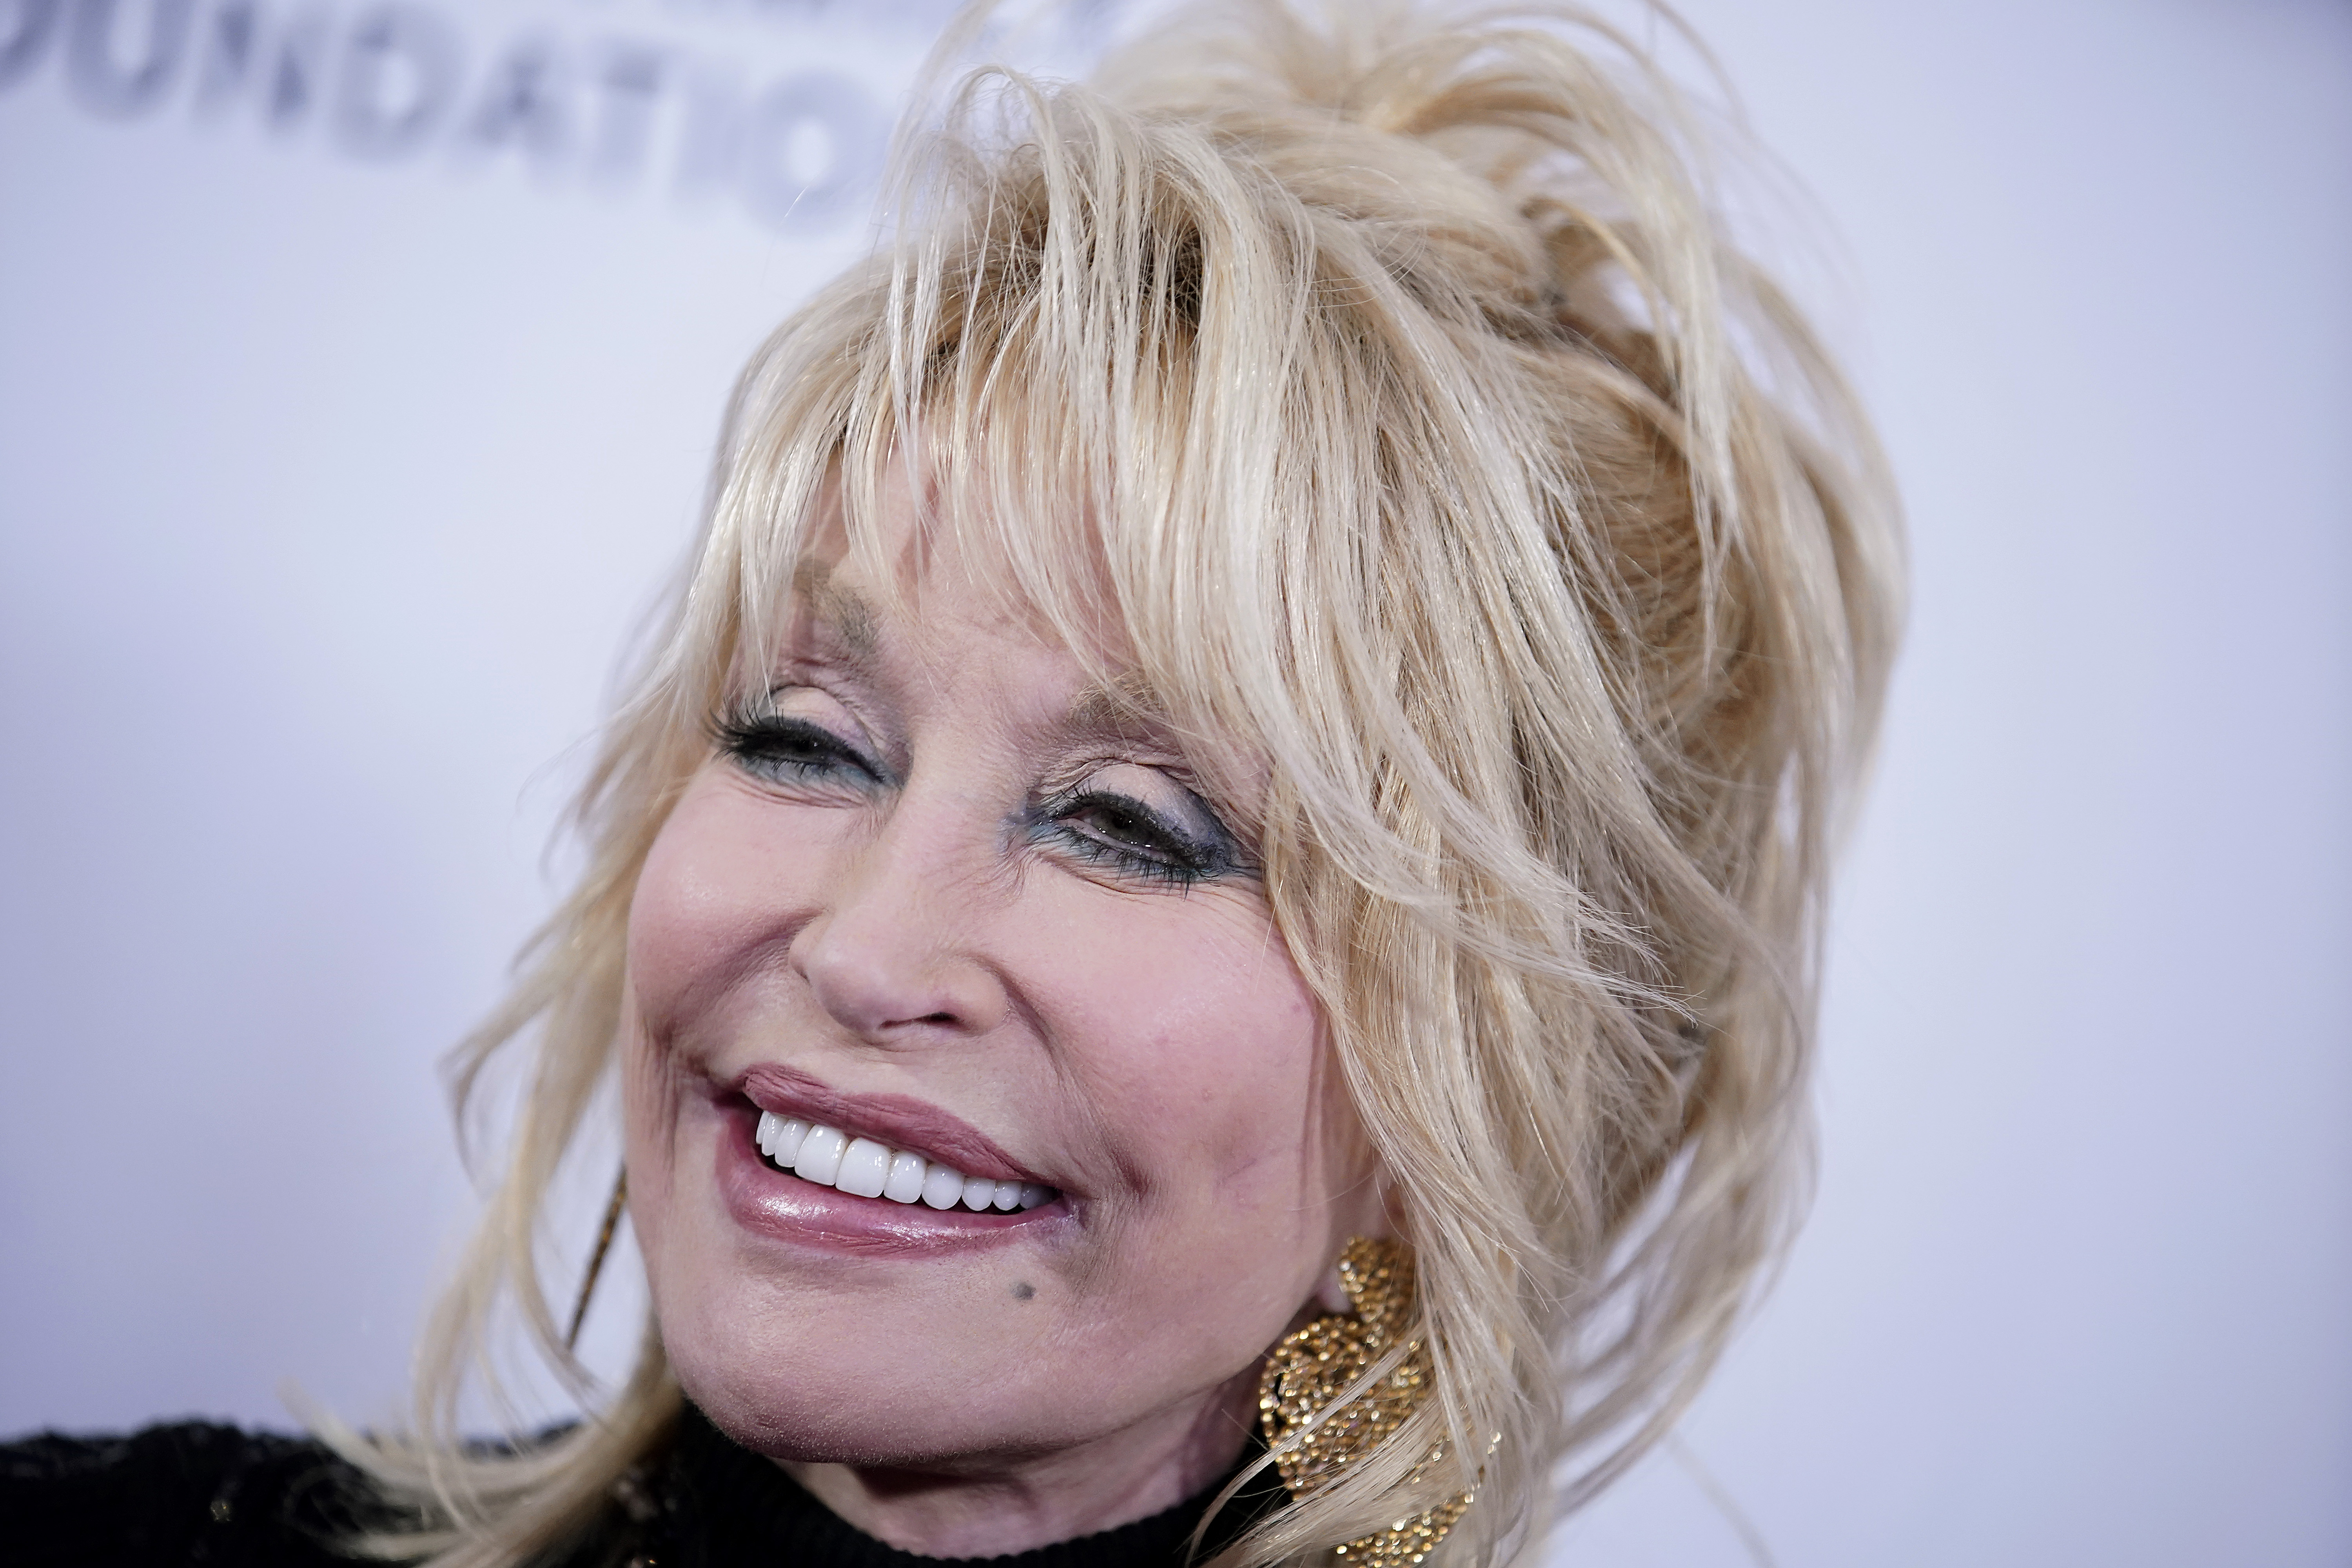 How Many Facelifts Has Dolly Parton Had